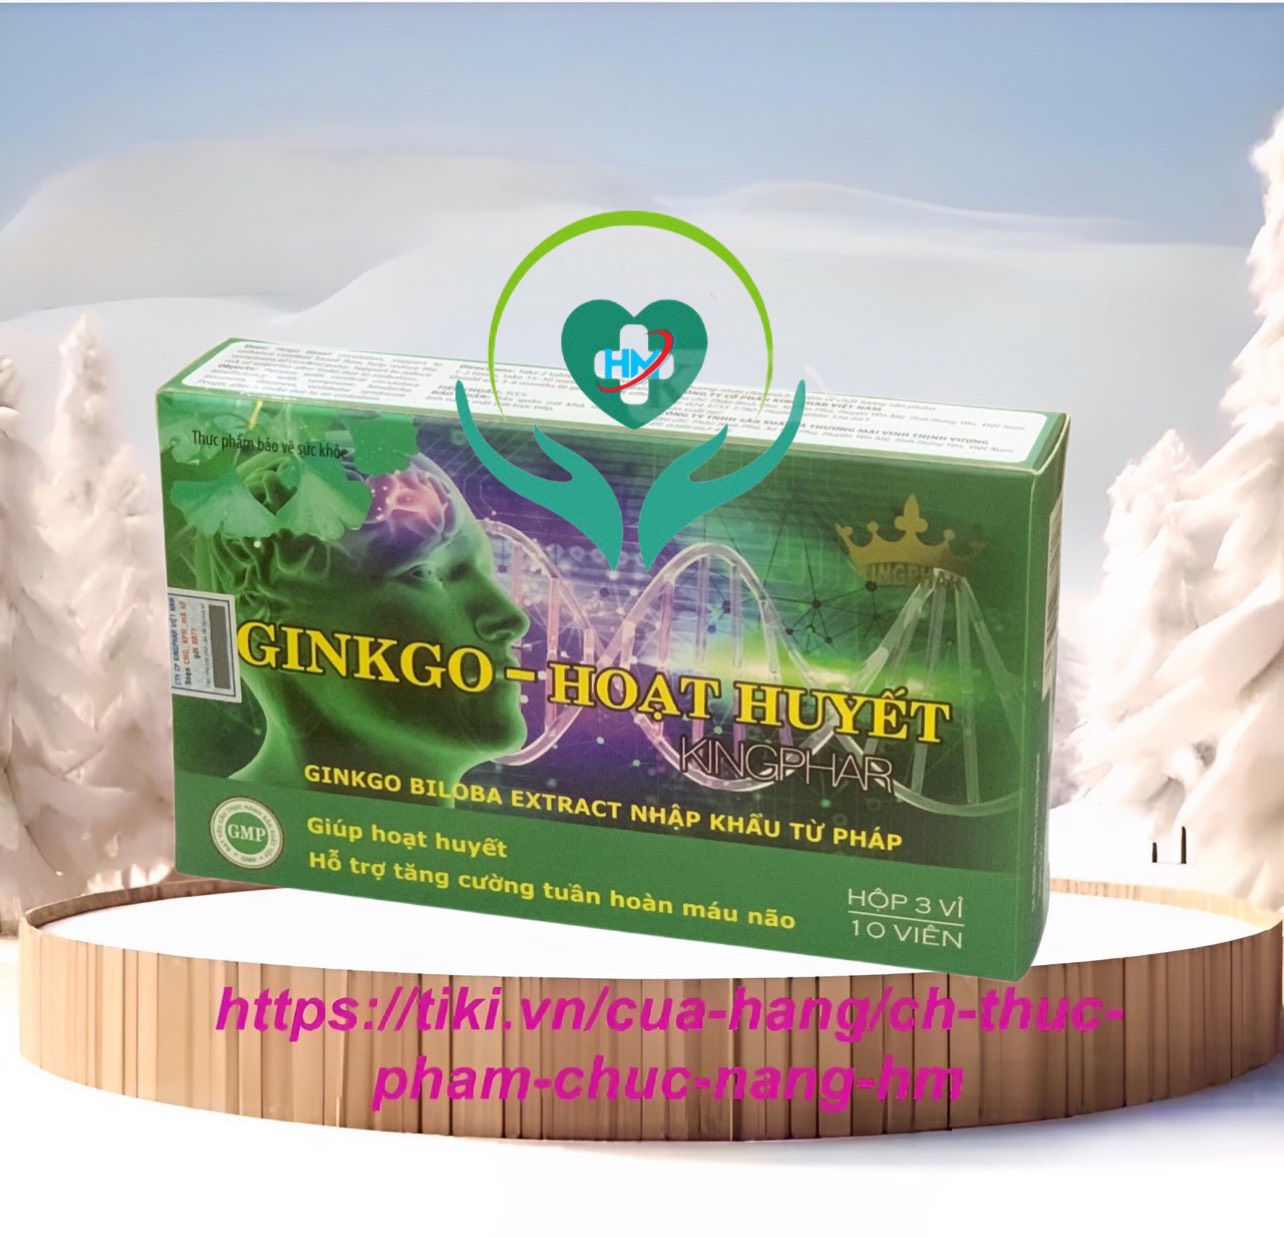 Viên uống Ginkgo - Hoạt huyết Kingphar , hộp 30v, tăng cường tuần hoàn não